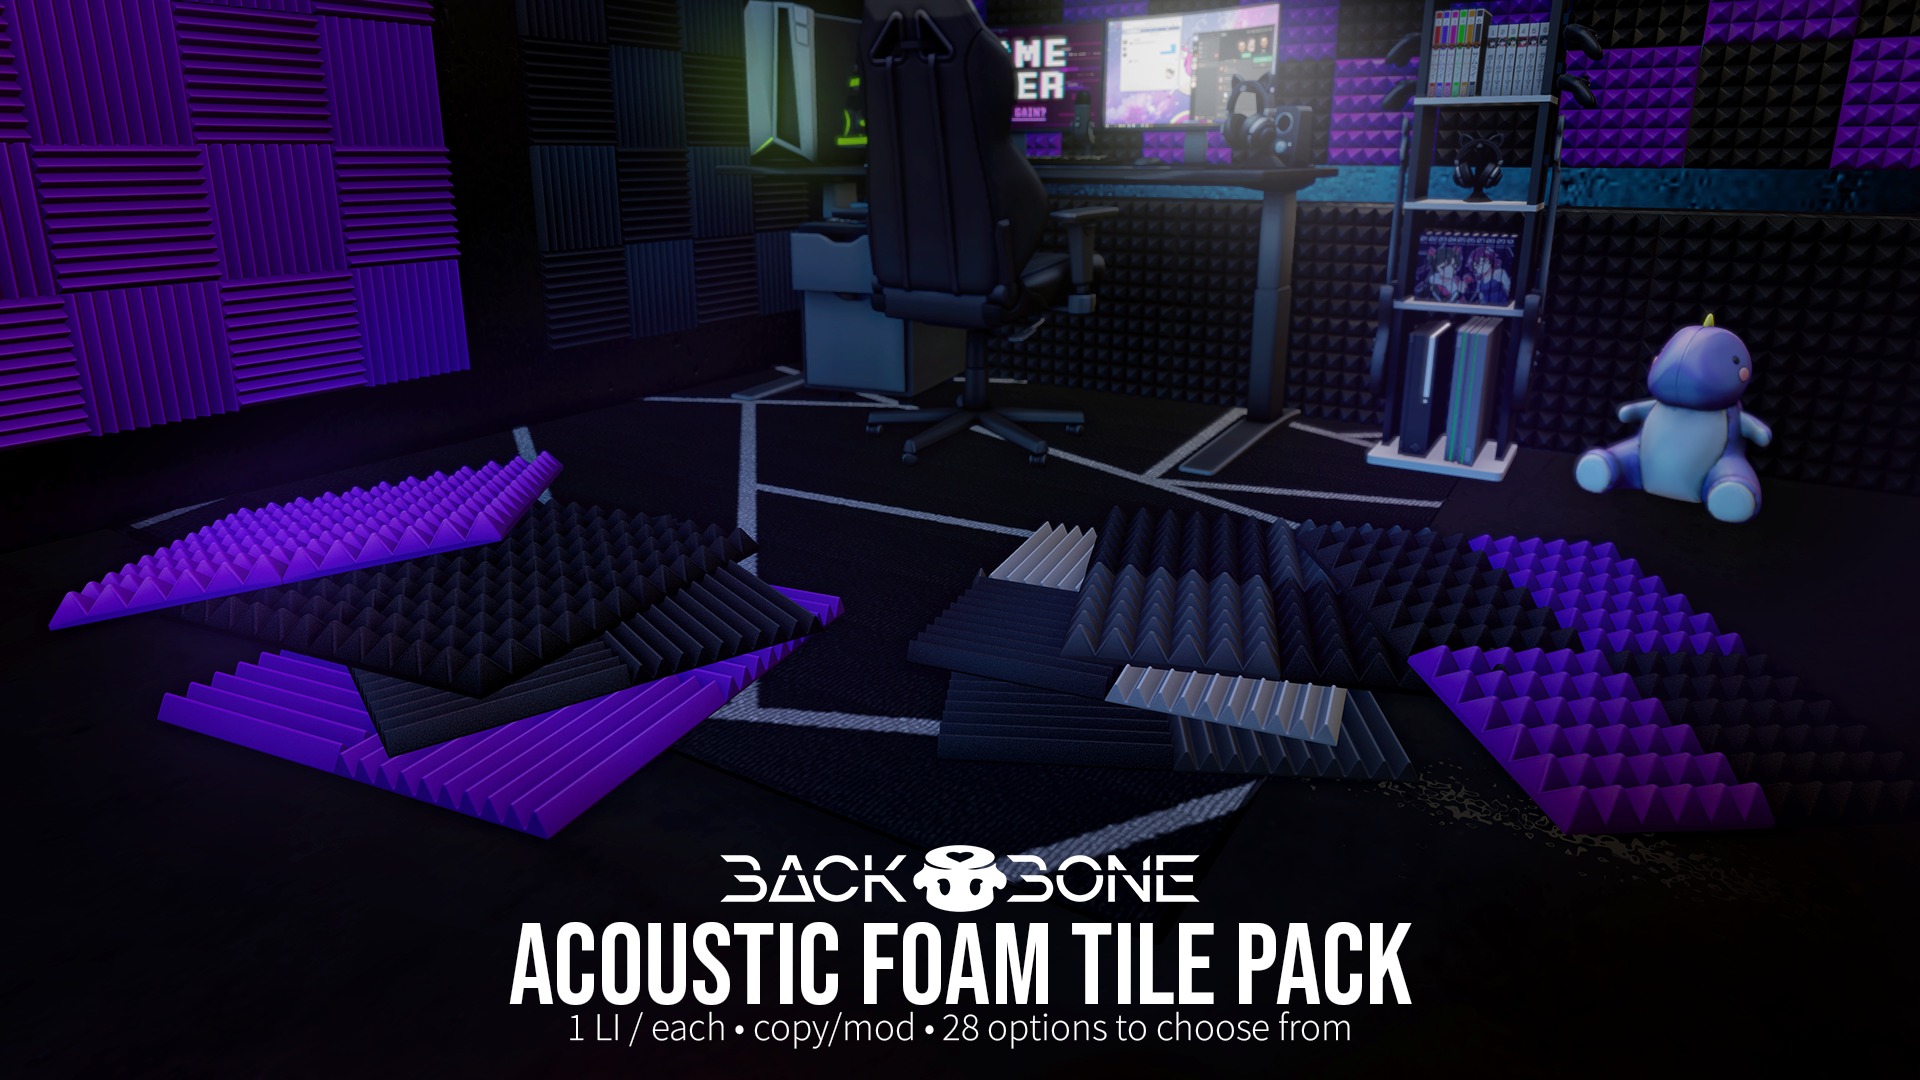 BackBone – Acoustic Foam Tile Pack